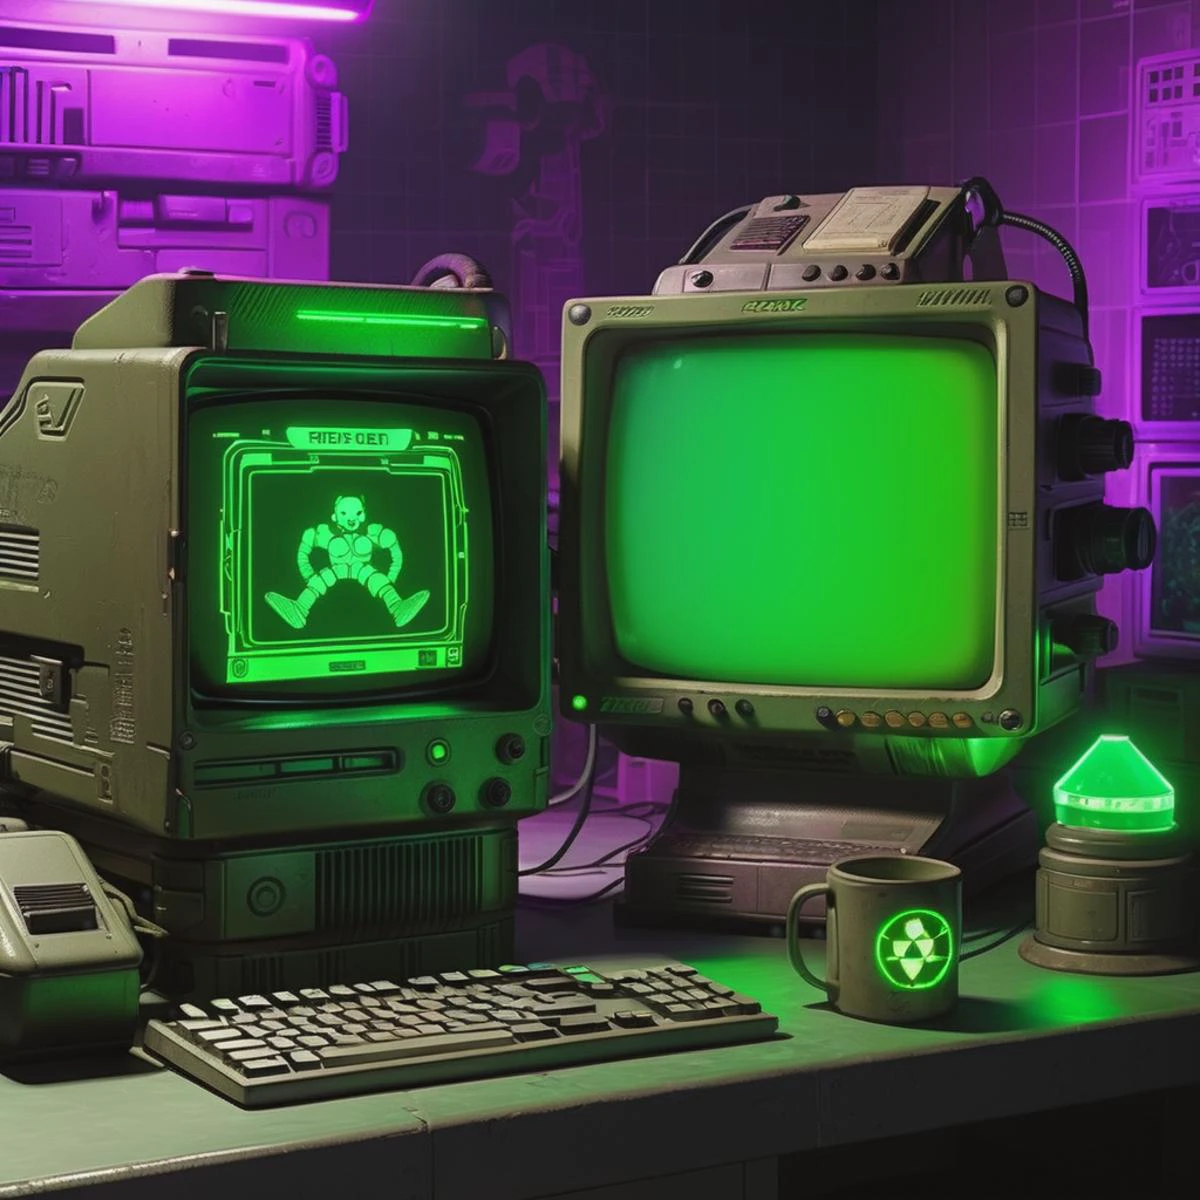 старый компьютер,1 большой монитор, 2 небольших дисплея, фото продукта, Пип-бой, выпадать, ( ретро кибер-технологии ), Светоотражающий, диафрагма f 8, 3D-рендеринг, новая объективность,  стиль киберпанк, зеленое свечение, фиолетовое свечение, темная комната, 